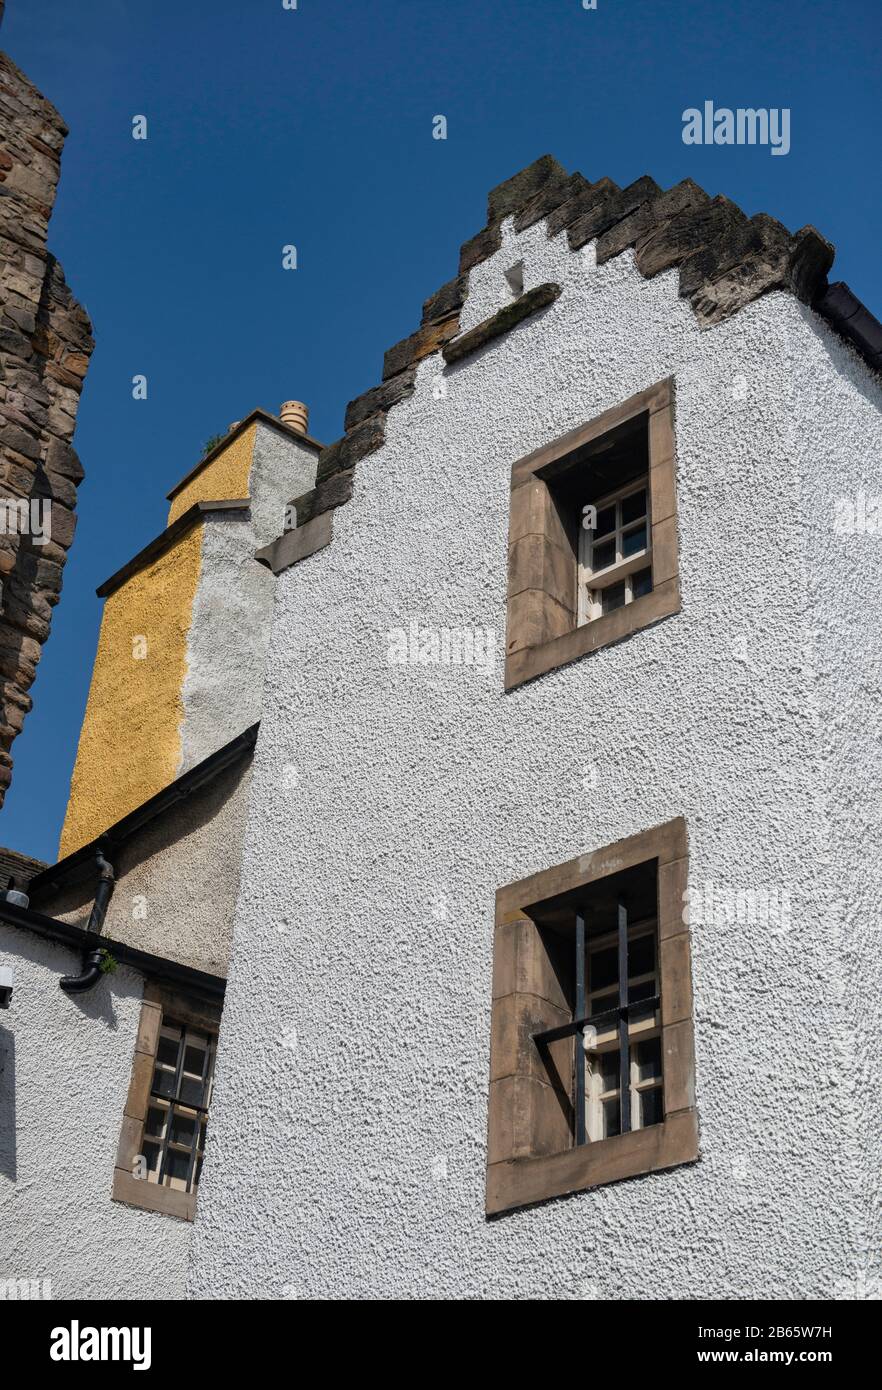 Wakehouse Close a Edimburgo, uno dei vicoli storici della città utilizzato come location per la serie TV Outlander Foto Stock